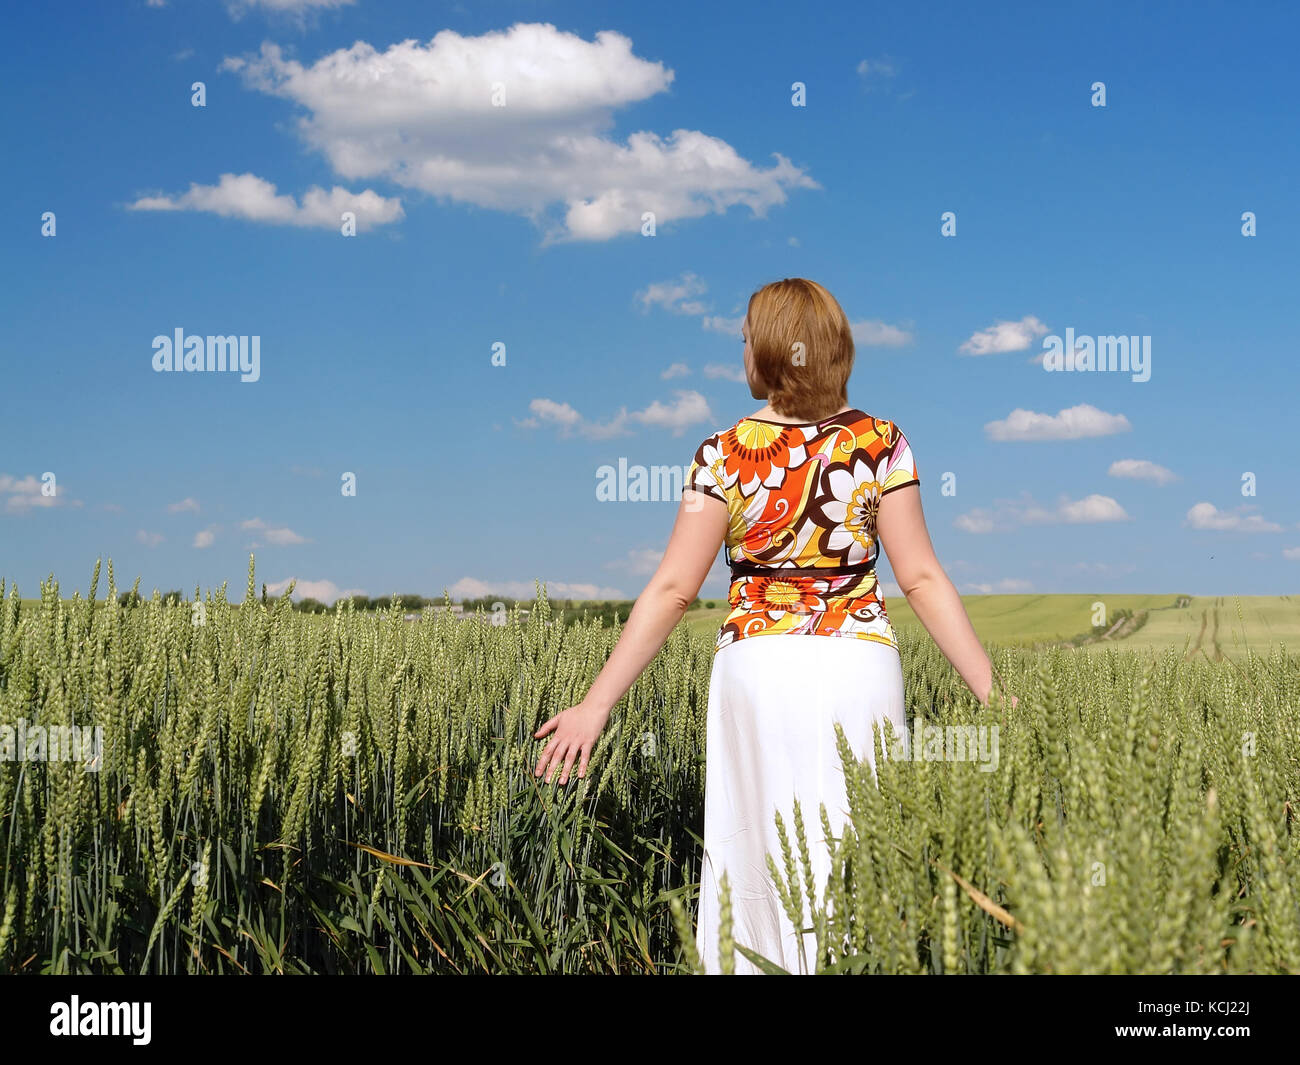 Frau mit Blumen geschmückten Bluse und weißen Rock durch Weizen bummeln in verträumte Stimmung zart skimming Mais Ohren mit ihren Handflächen Stockfoto